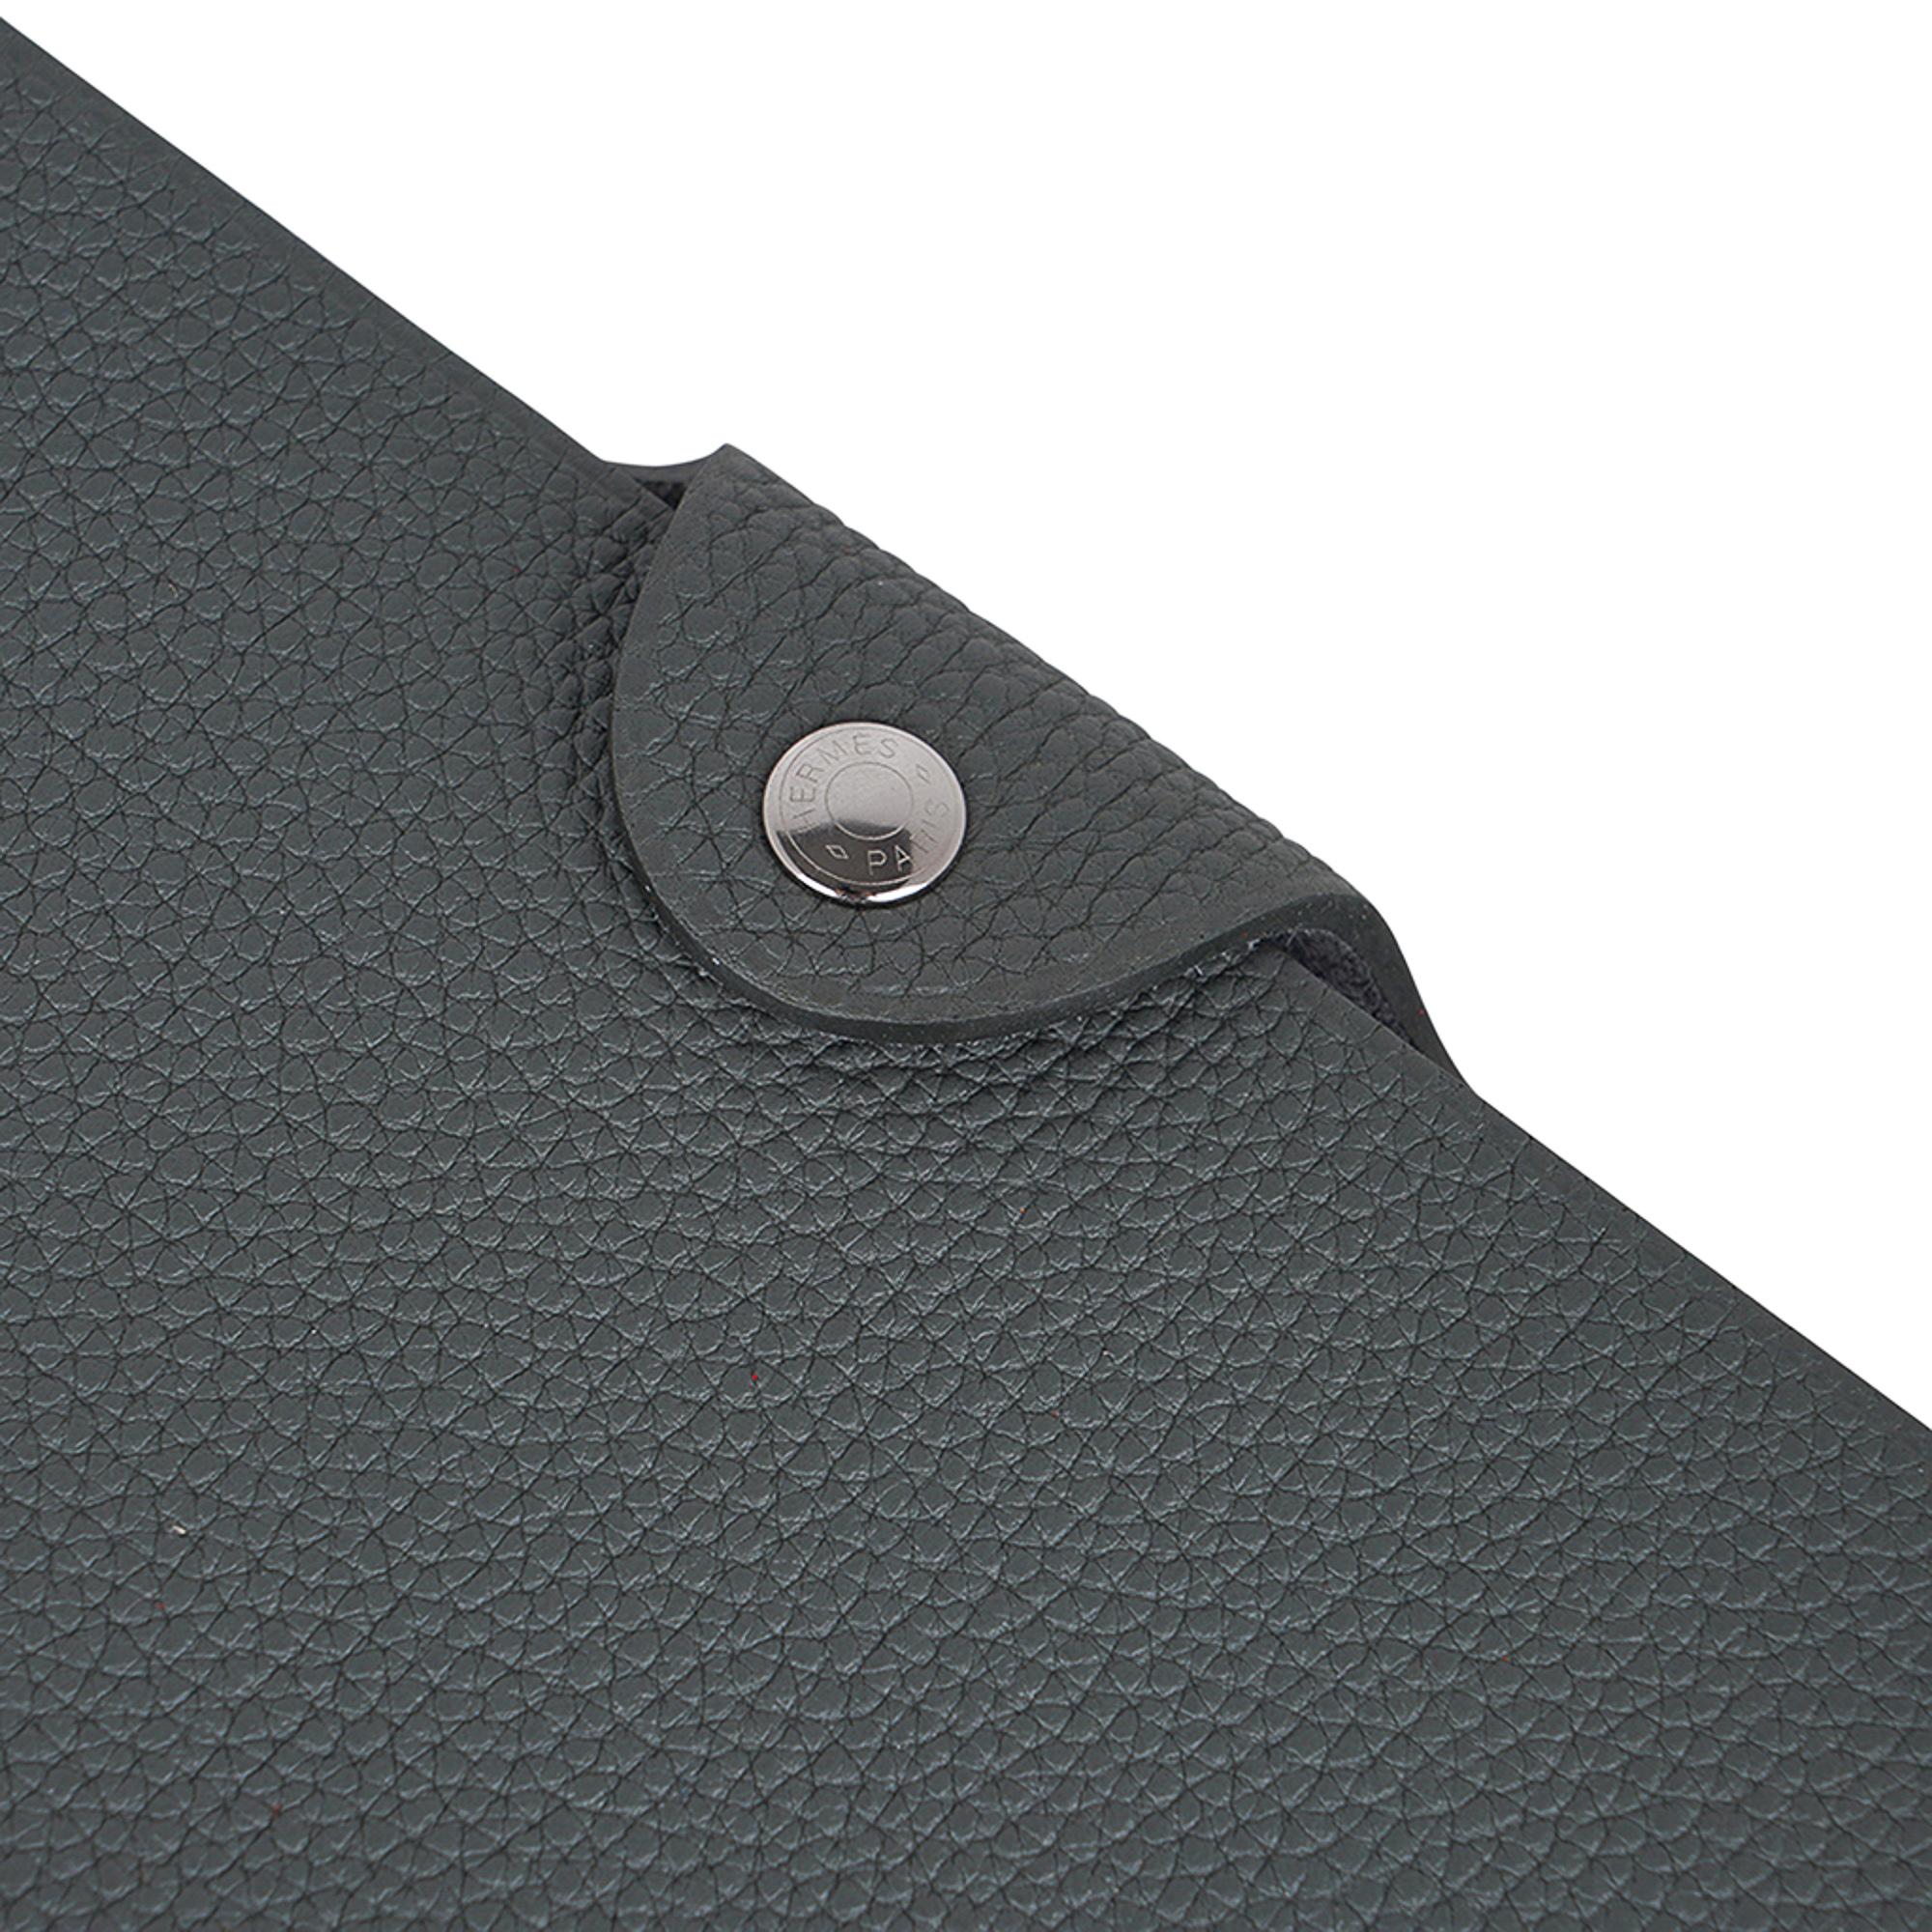 Mightychic bietet ein Hermes Ulysse PM Modell Notebook Hülle Funktionen Vert Amande in Togo Leder.
Palladium Clou de Selle snap.
Wird mit Notebook-Mine geliefert.
Jedes Stück wird mit der charakteristischen Hermes-Schachtel und einem Band